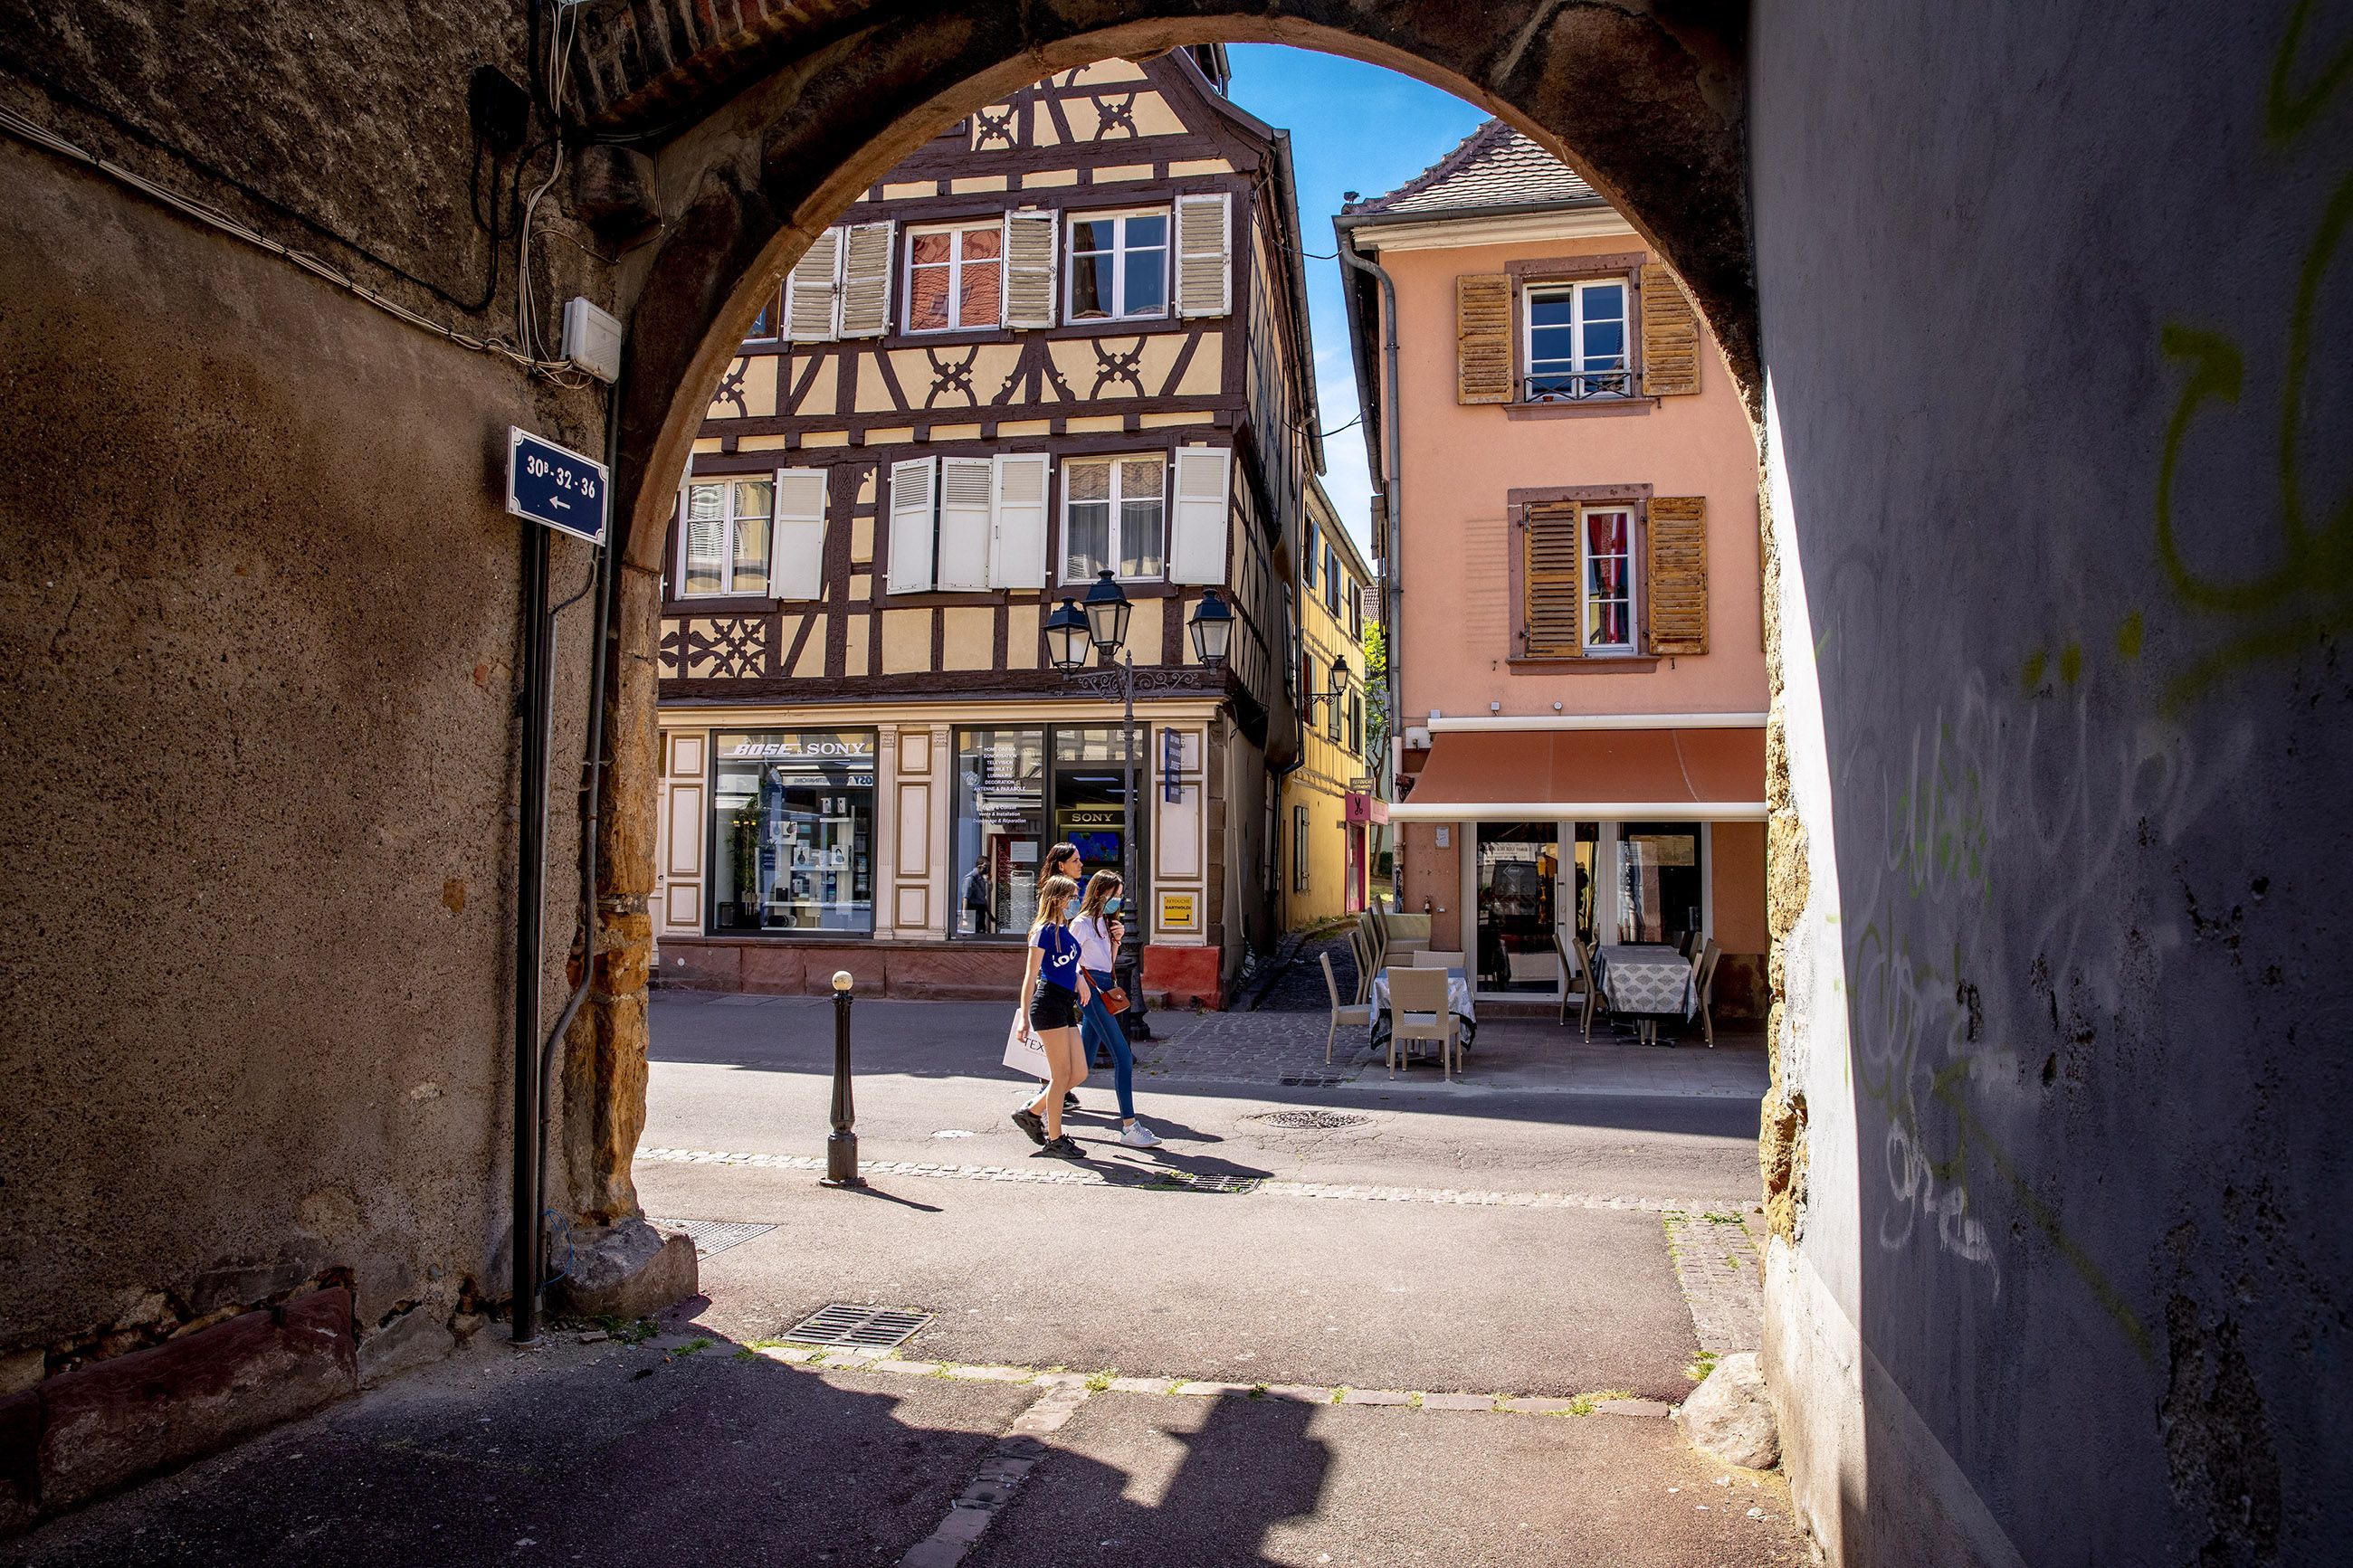 Les ruelles et porches de la rue Vauban - Colmar 